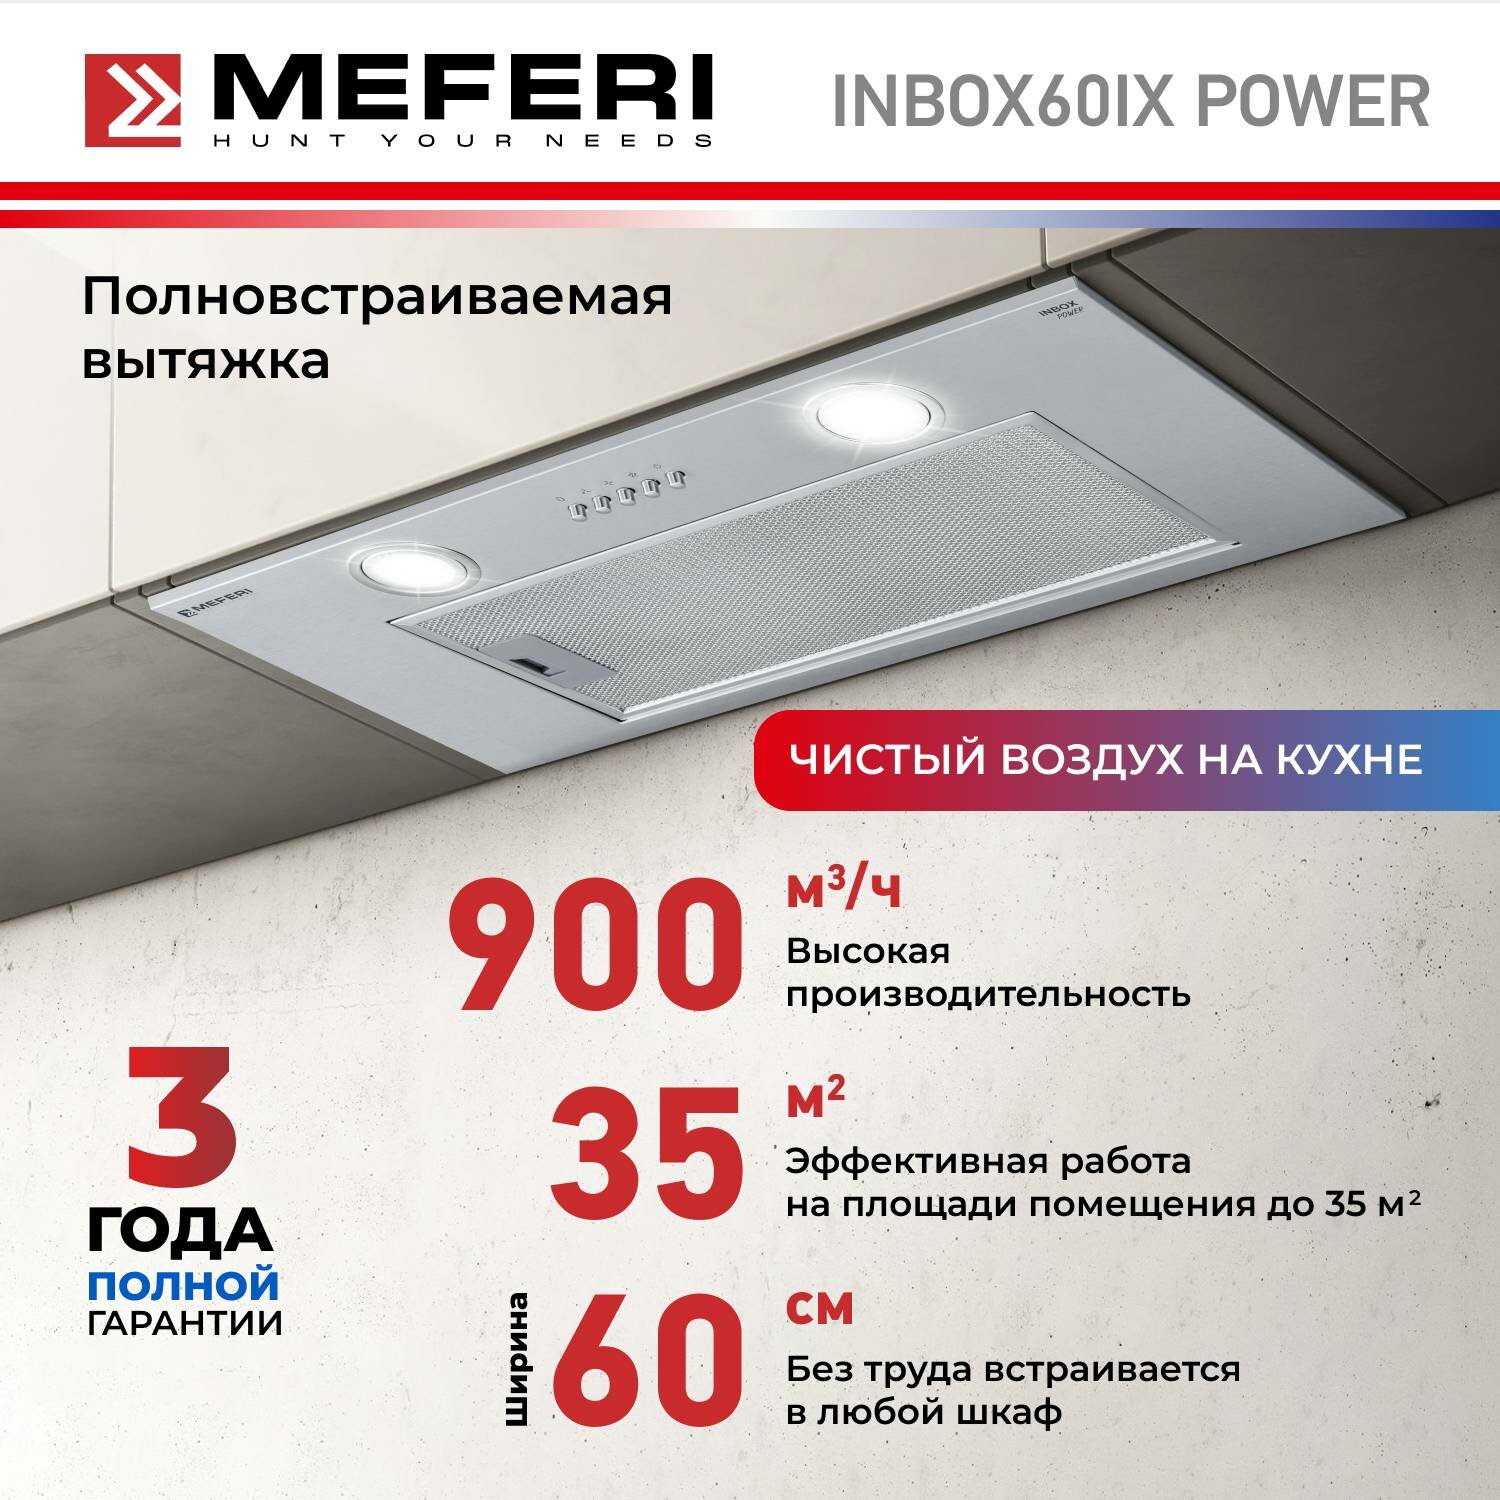 Полновстраиваемая вытяжка MEFERI INBOX60 POWER